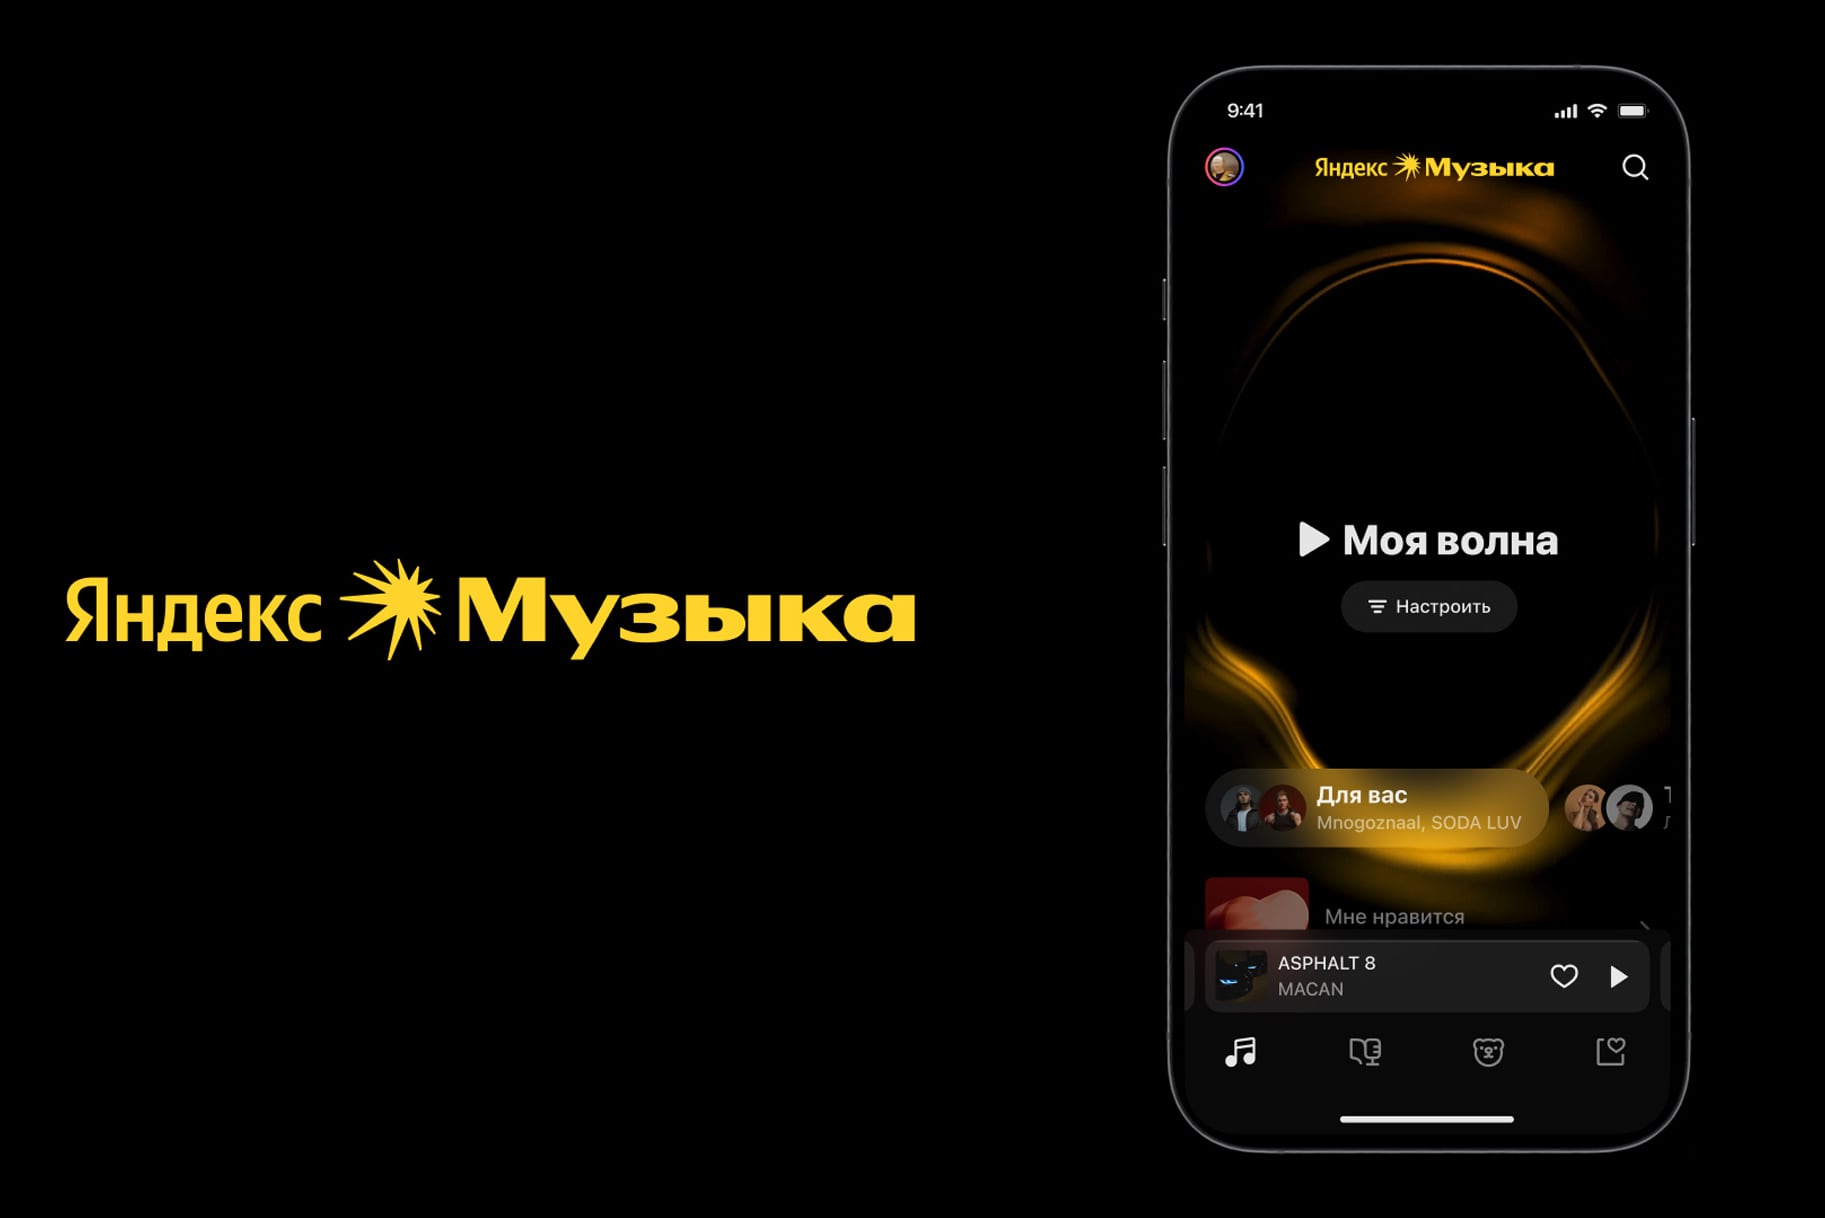 Яндекс Музыка представила новый логотип, визуальный стиль и приложение для Mac